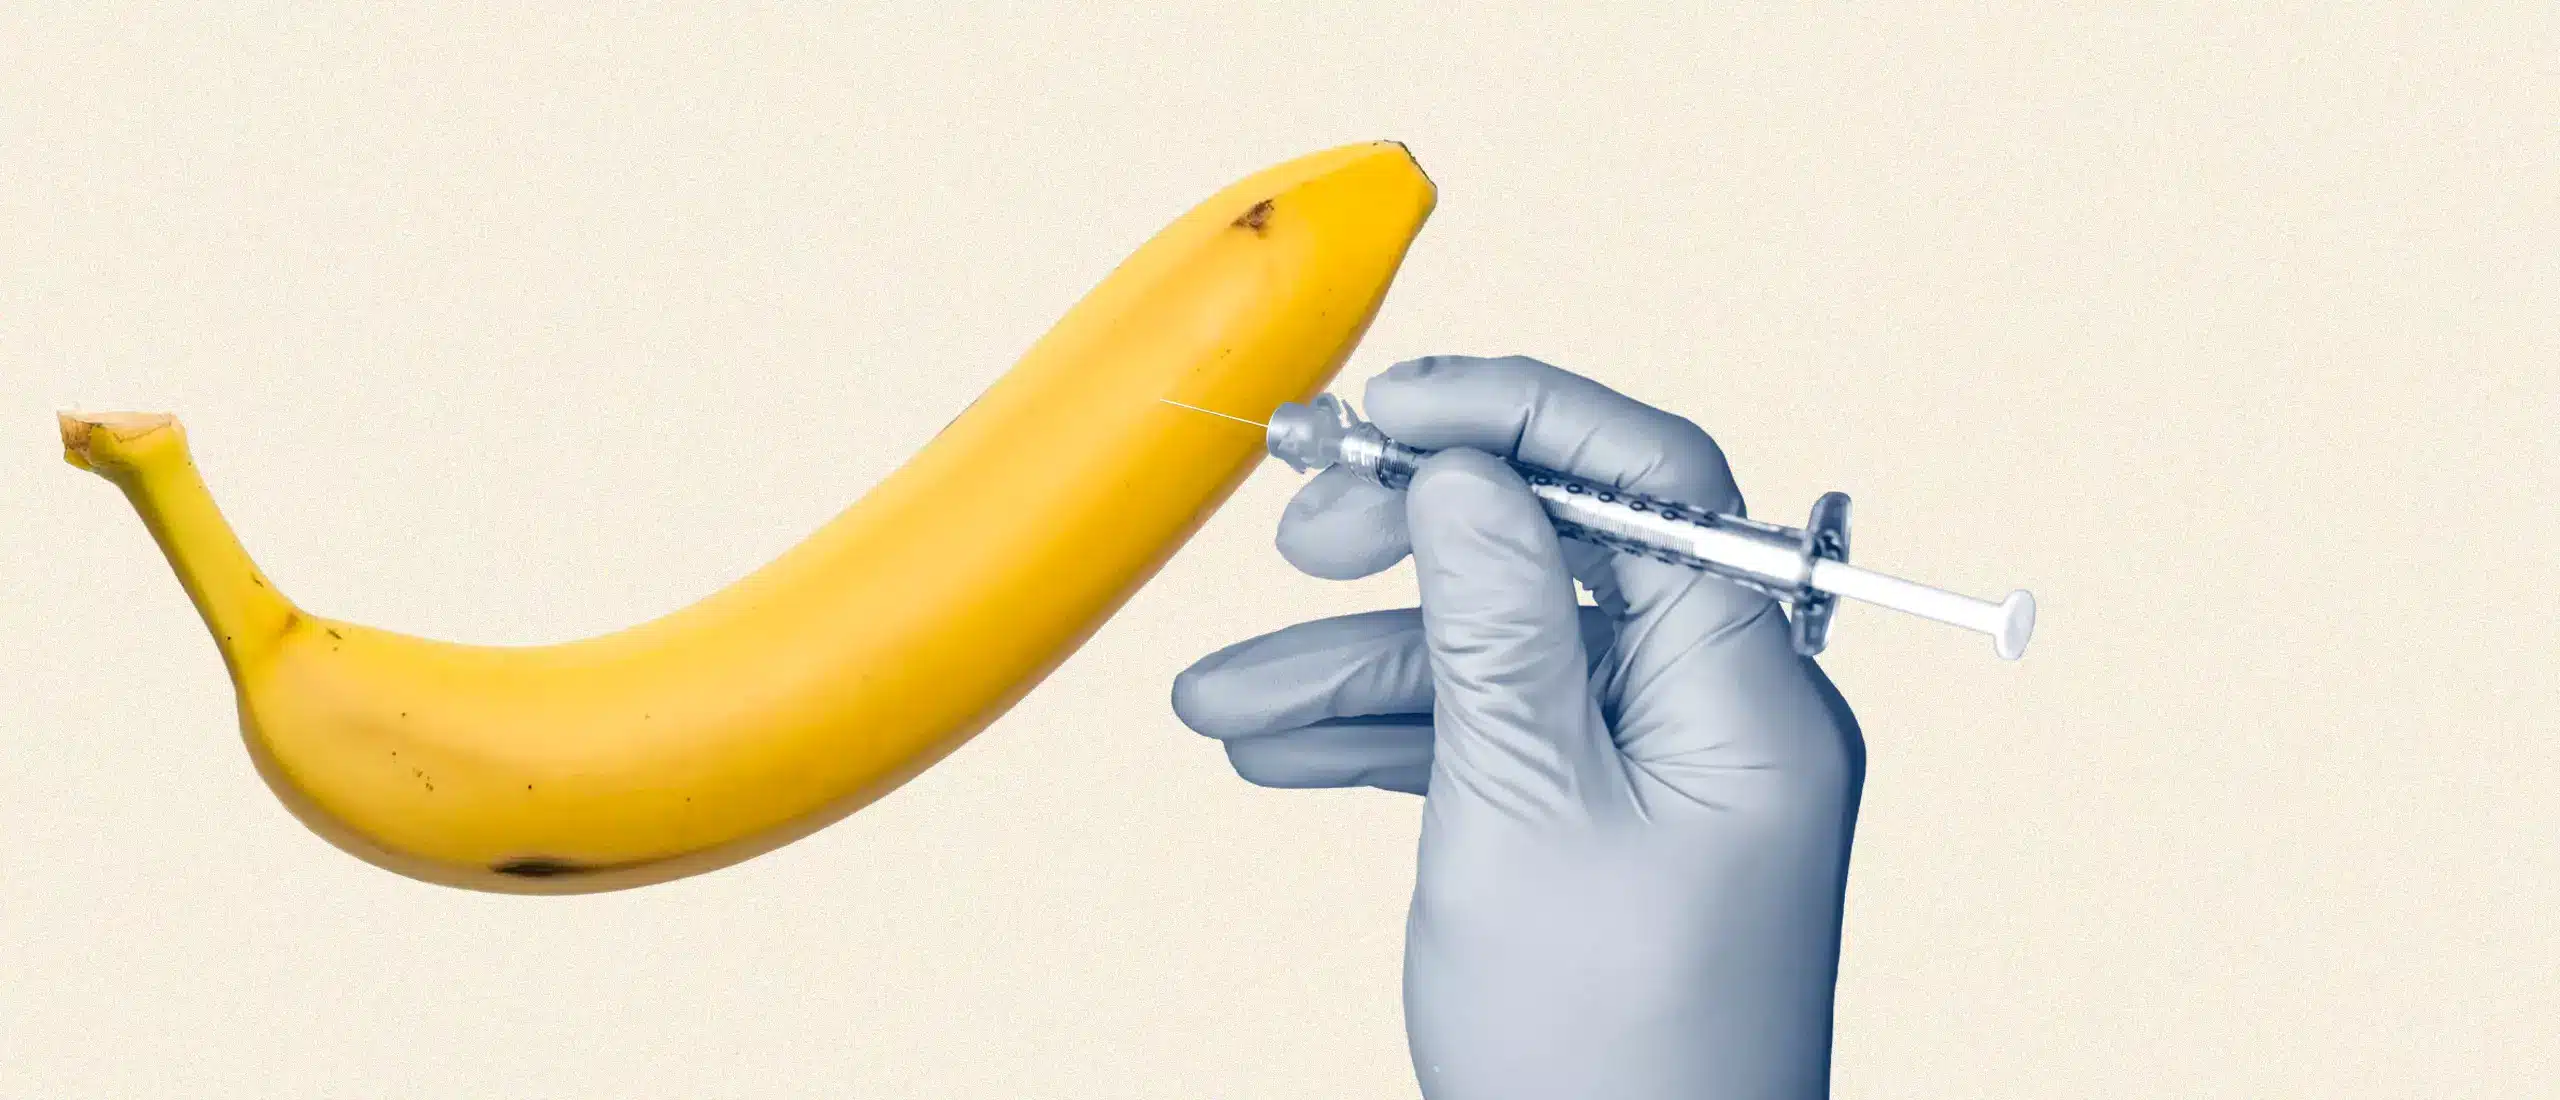 syringe poked into a banana